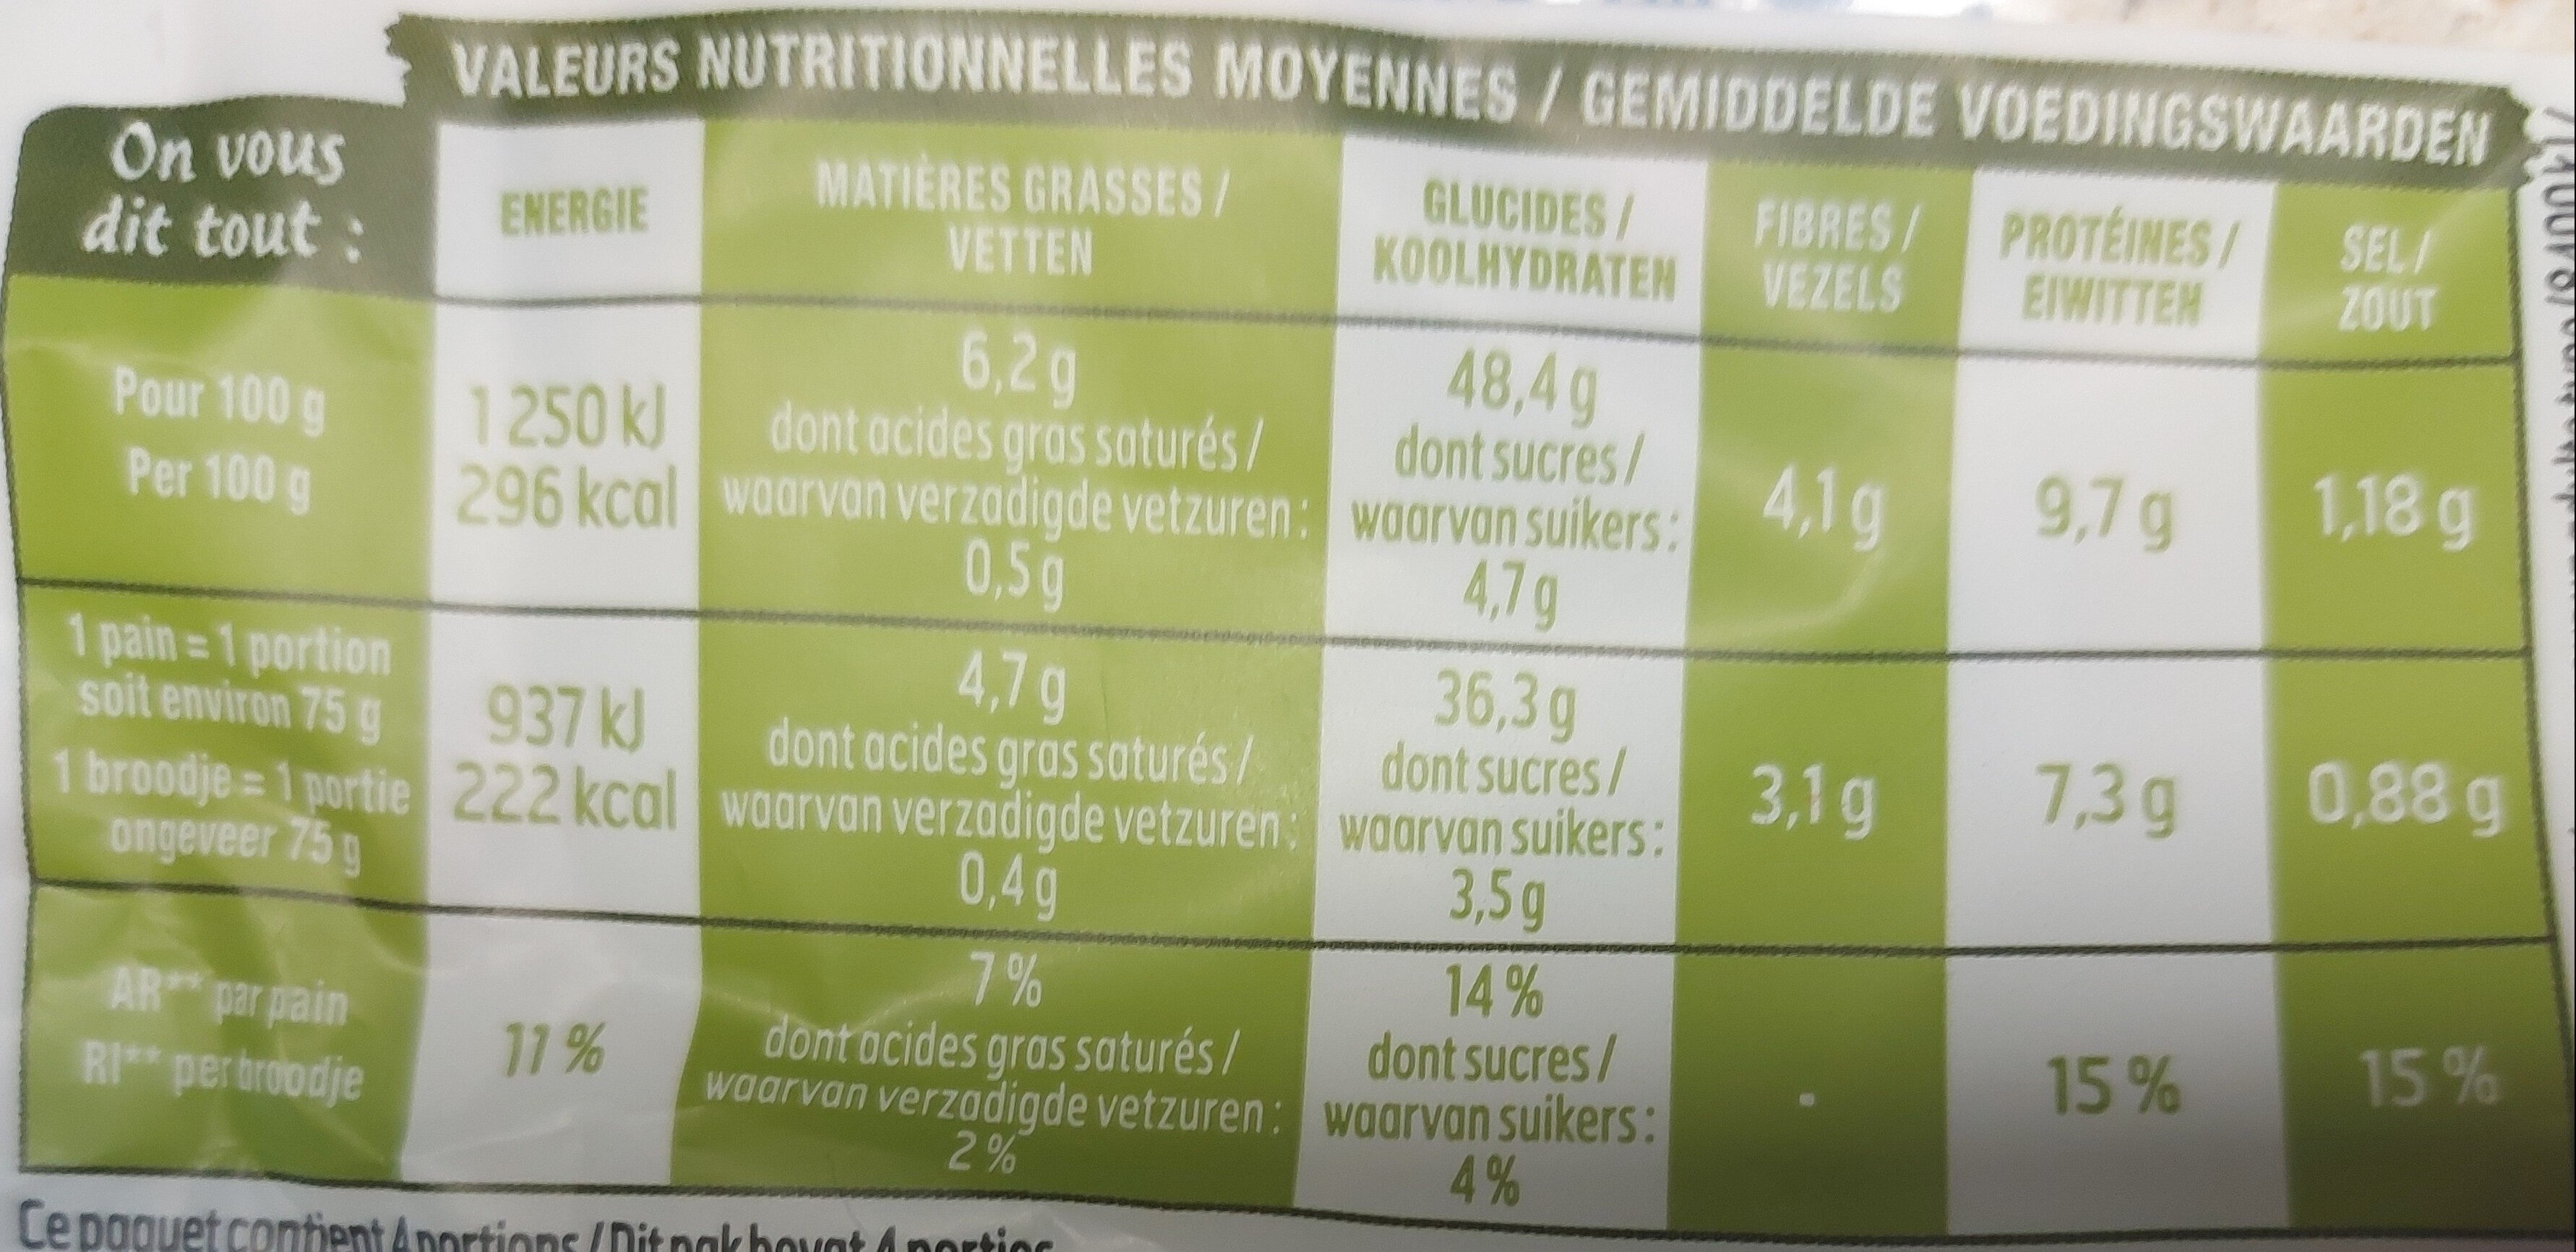 Harrys pain burger brioché aux graines x4 - Nutrition facts - fr